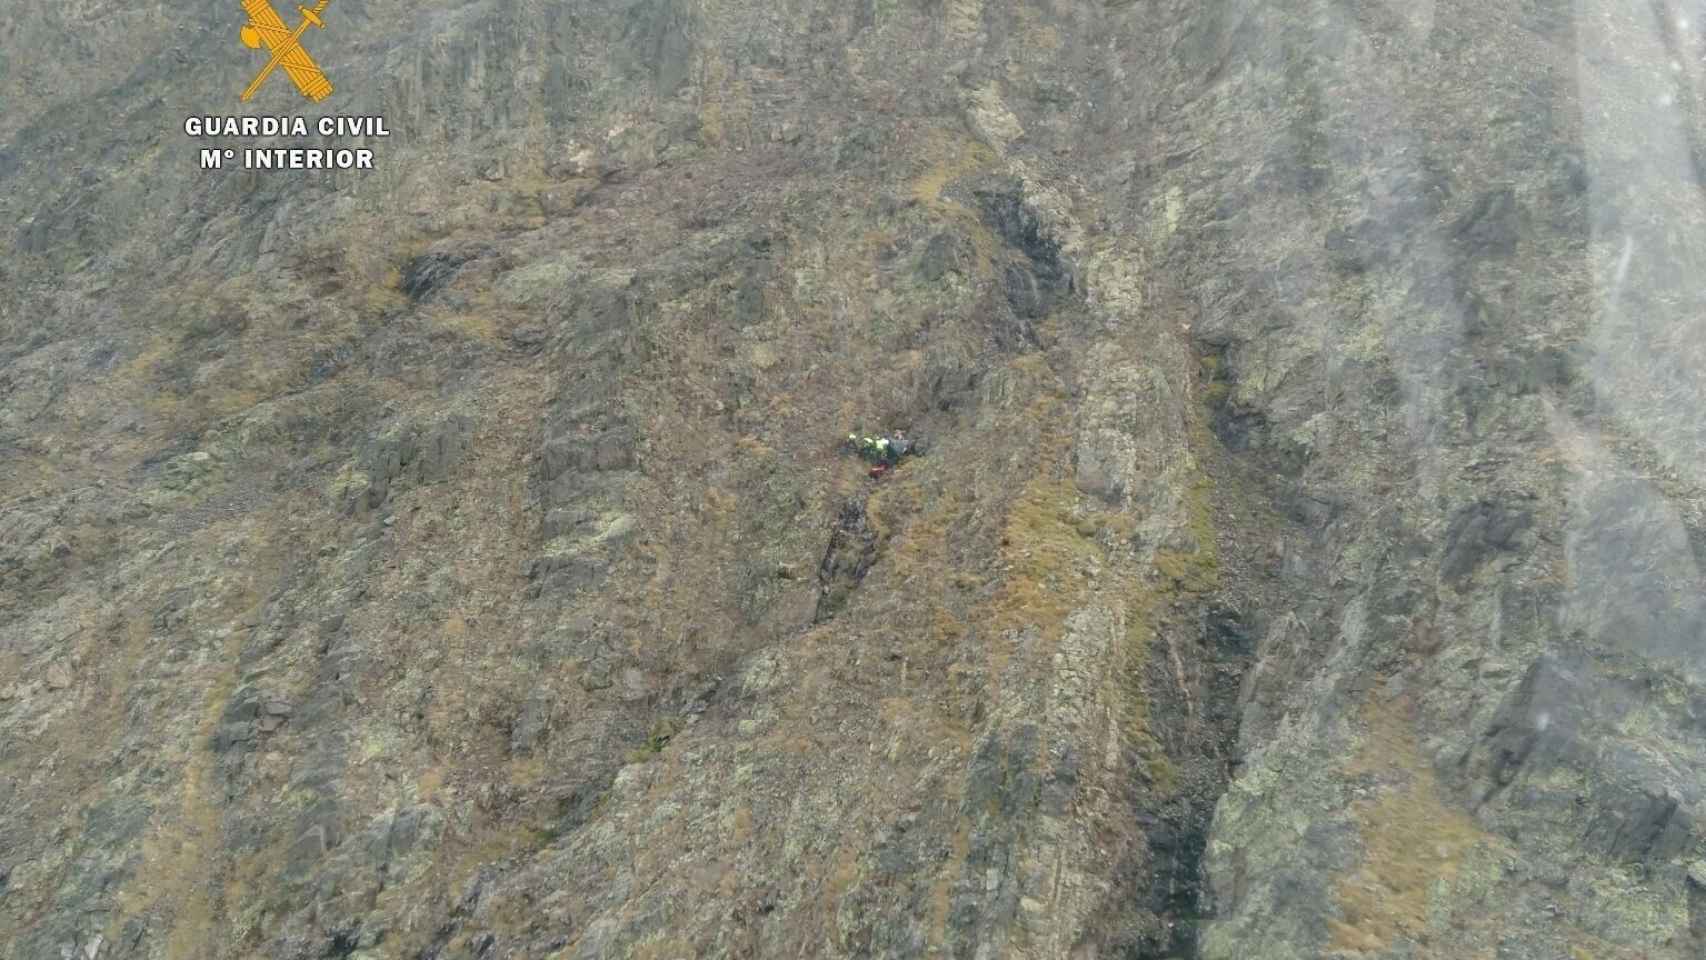 El rescate, realizado por la GUardia Civil, se hizo cerca del Pico del Infierno.